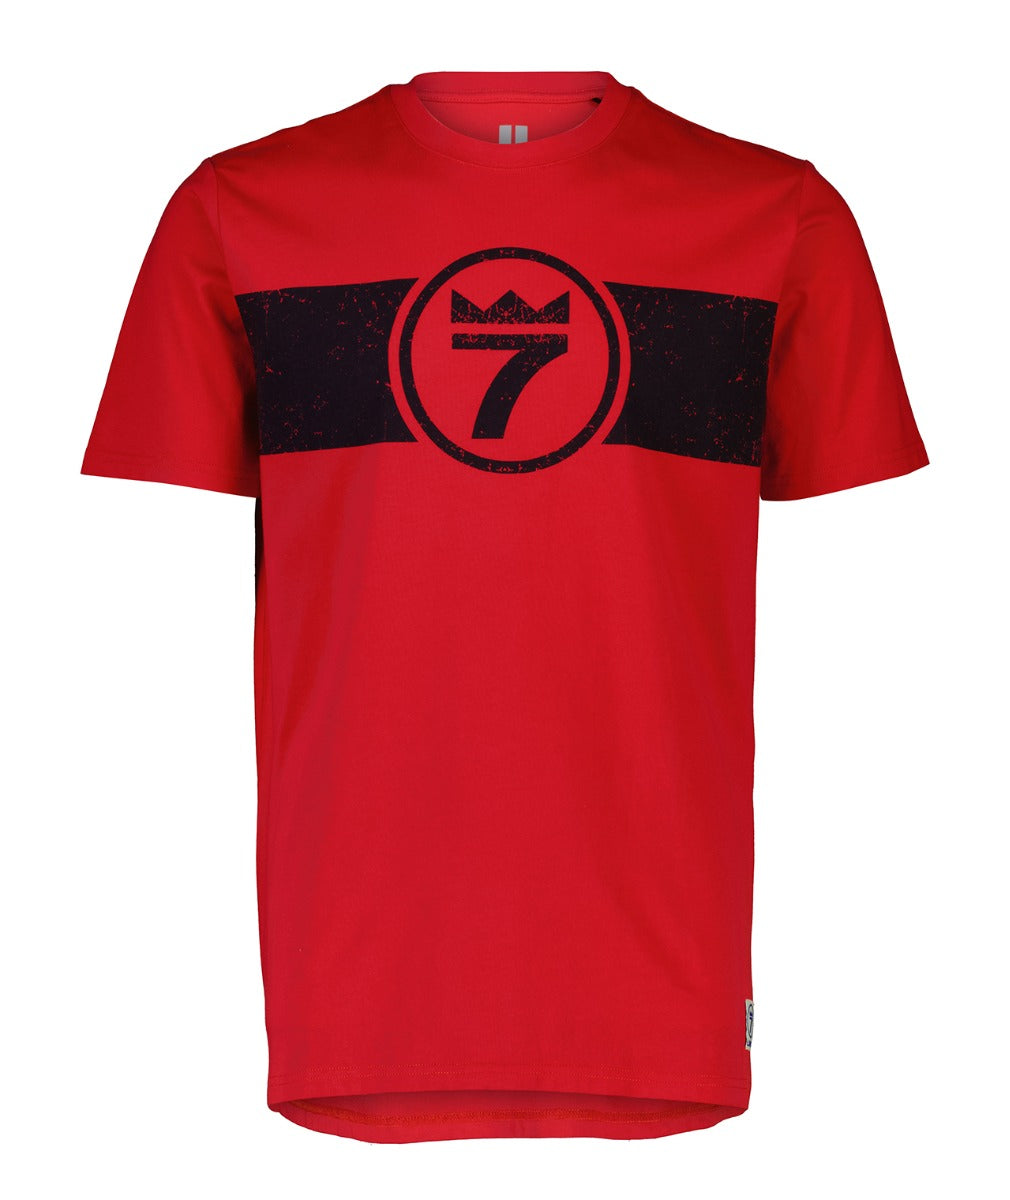 line-7-men-s-vintage-t-shirt.jpg